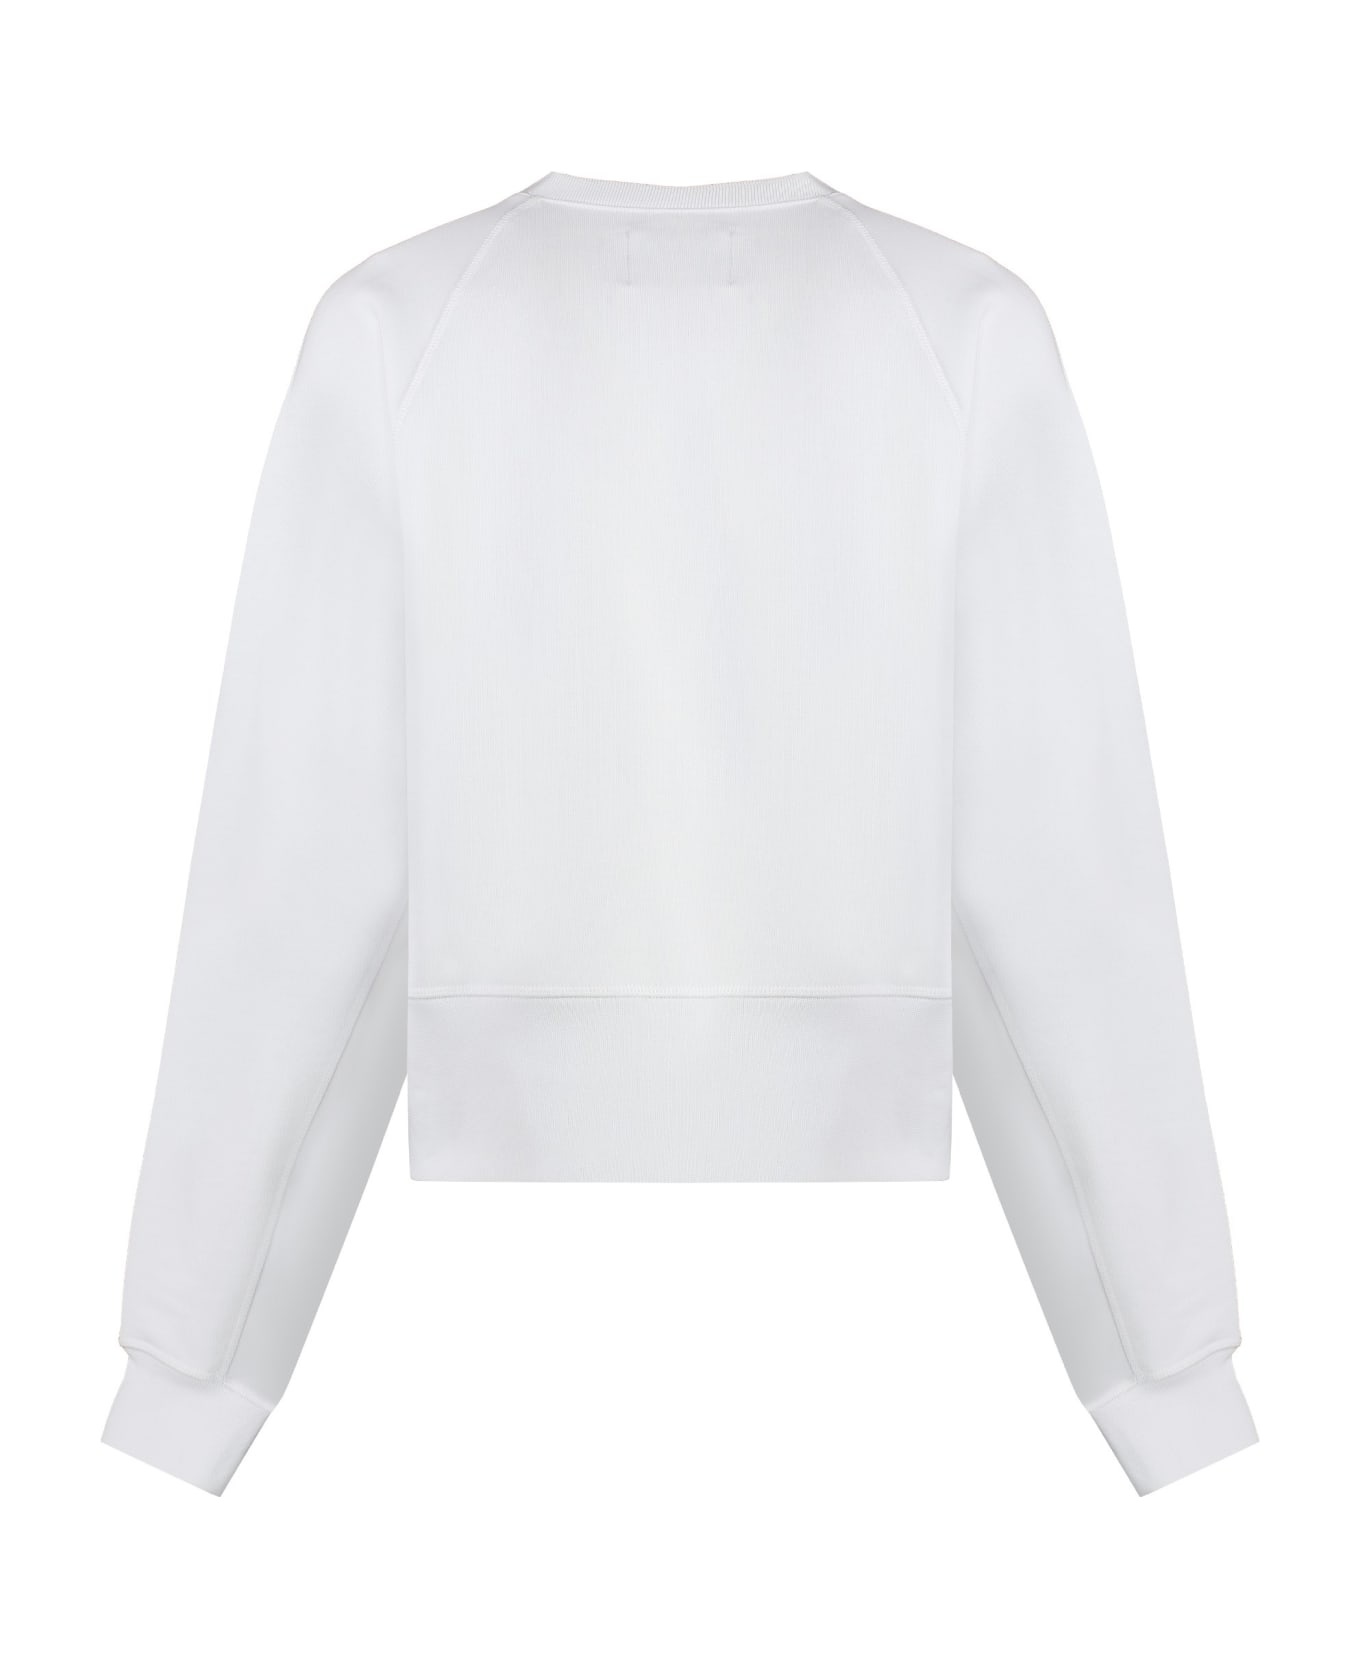 Vivienne Westwood Logo Sweatshirt - White